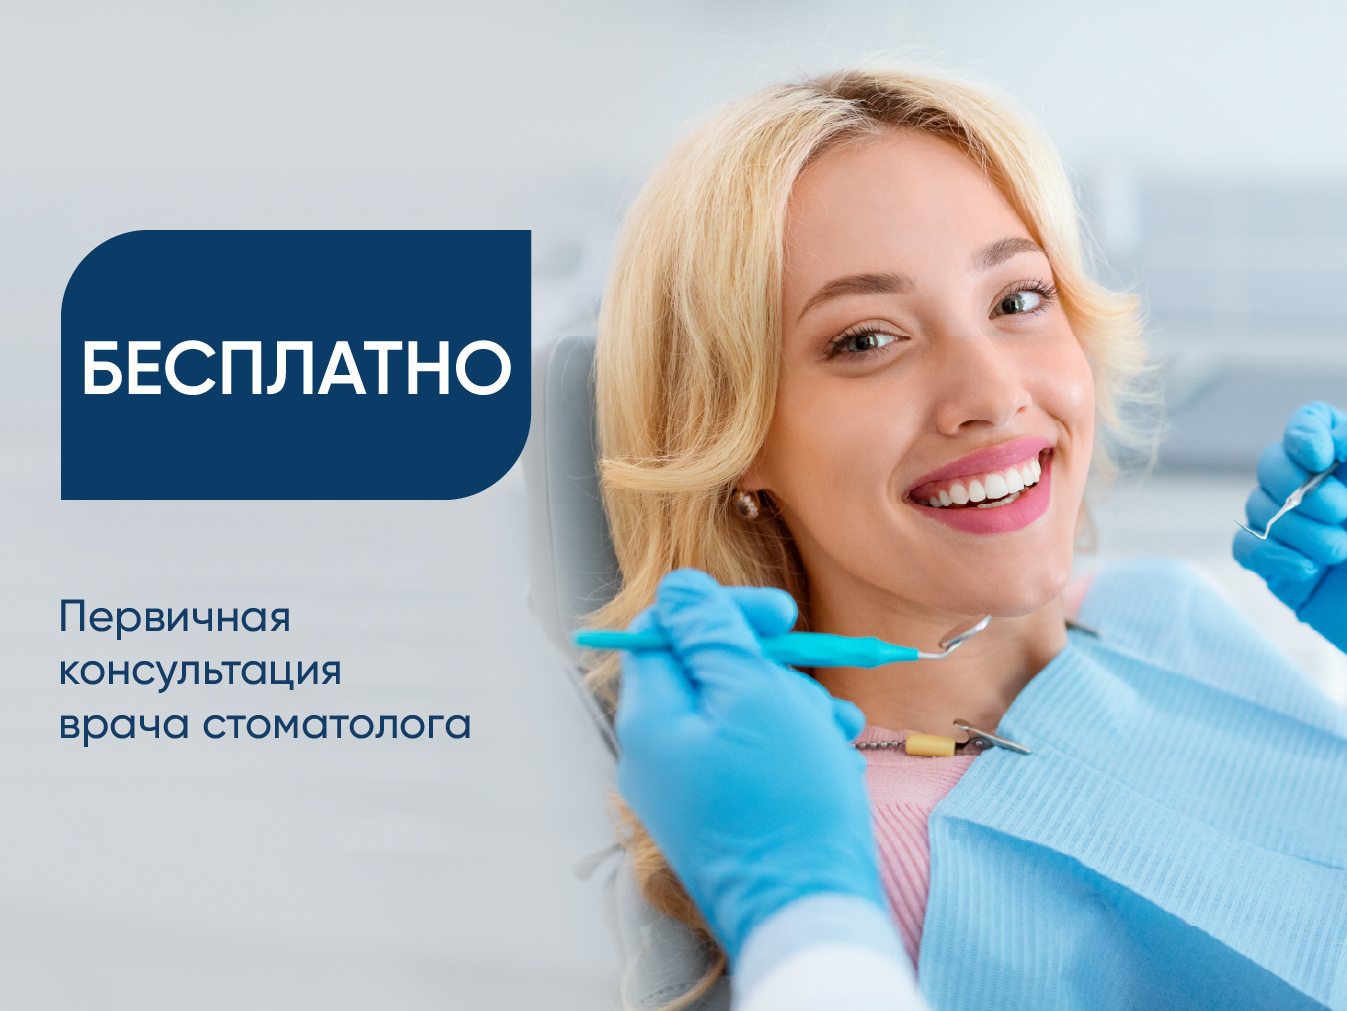 Бесплатная первичная консультация врача стоматолога!